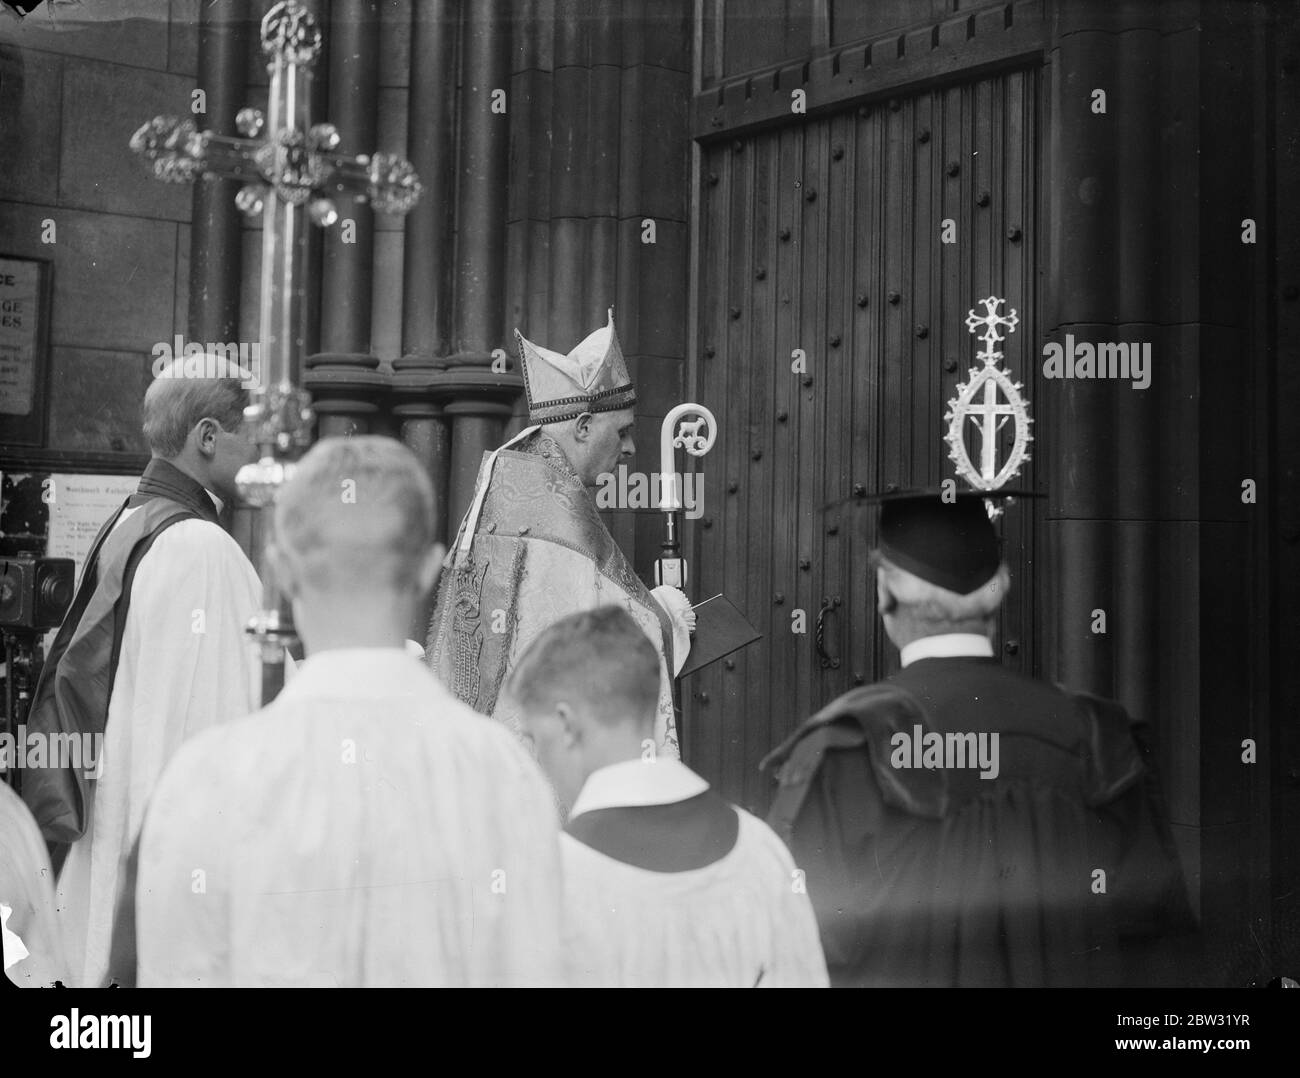 Neuer Bischof von Southwark thront in Southwark Kathedrale. DR R G Parsons, der neue Bischof von Southwark, wurde in Southwark Cathedral, London mit alten Zeremonie. Der neue Bischof von Southwark klopft an der Tür der Kathedrale für die Aufnahme, nach dem Brauch, bei seiner Ankunft für die Inthronisation Zeremonie. 23 Juli 1932 Stockfoto